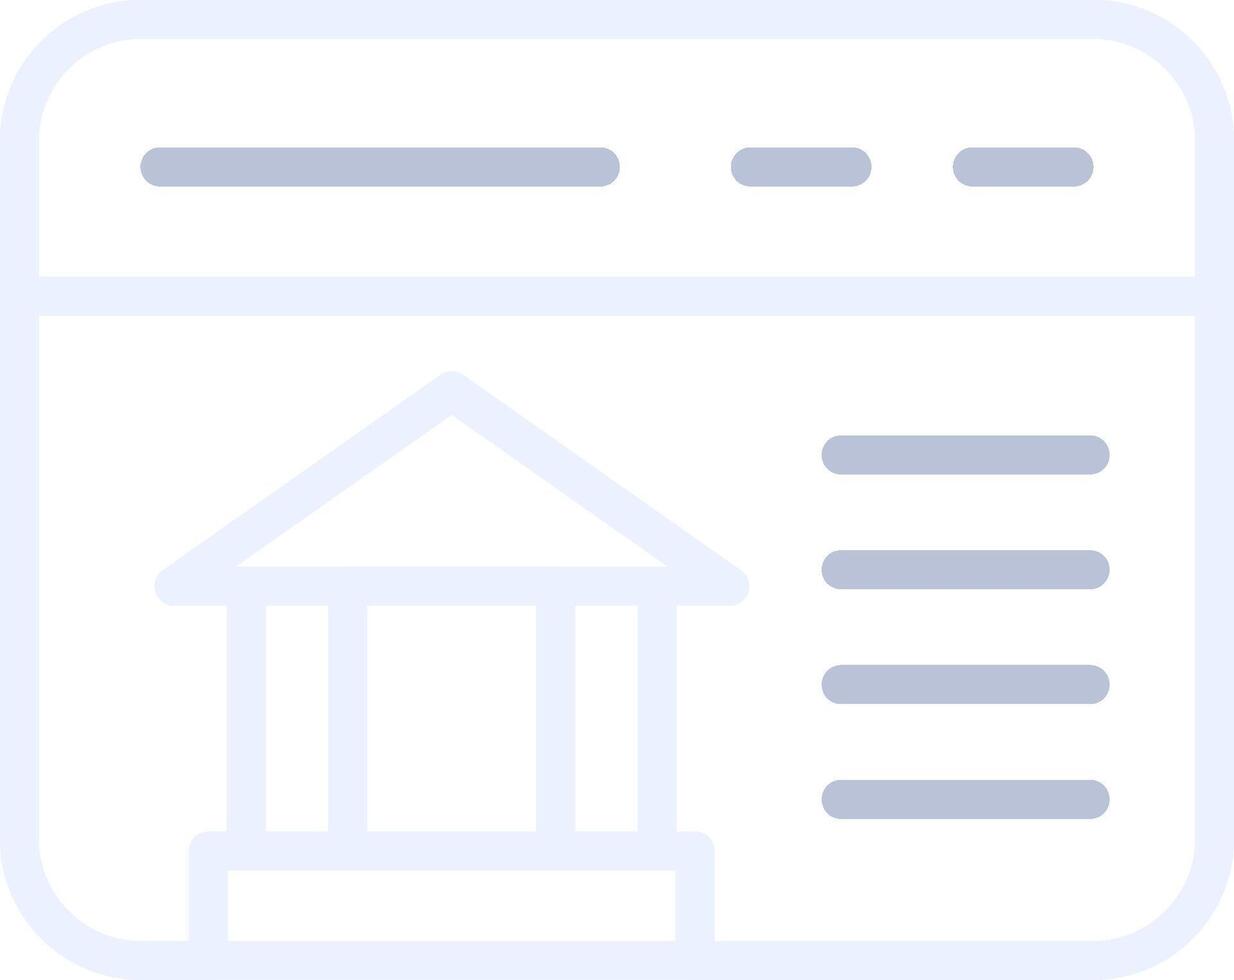 design de ícone criativo de banco on-line vetor